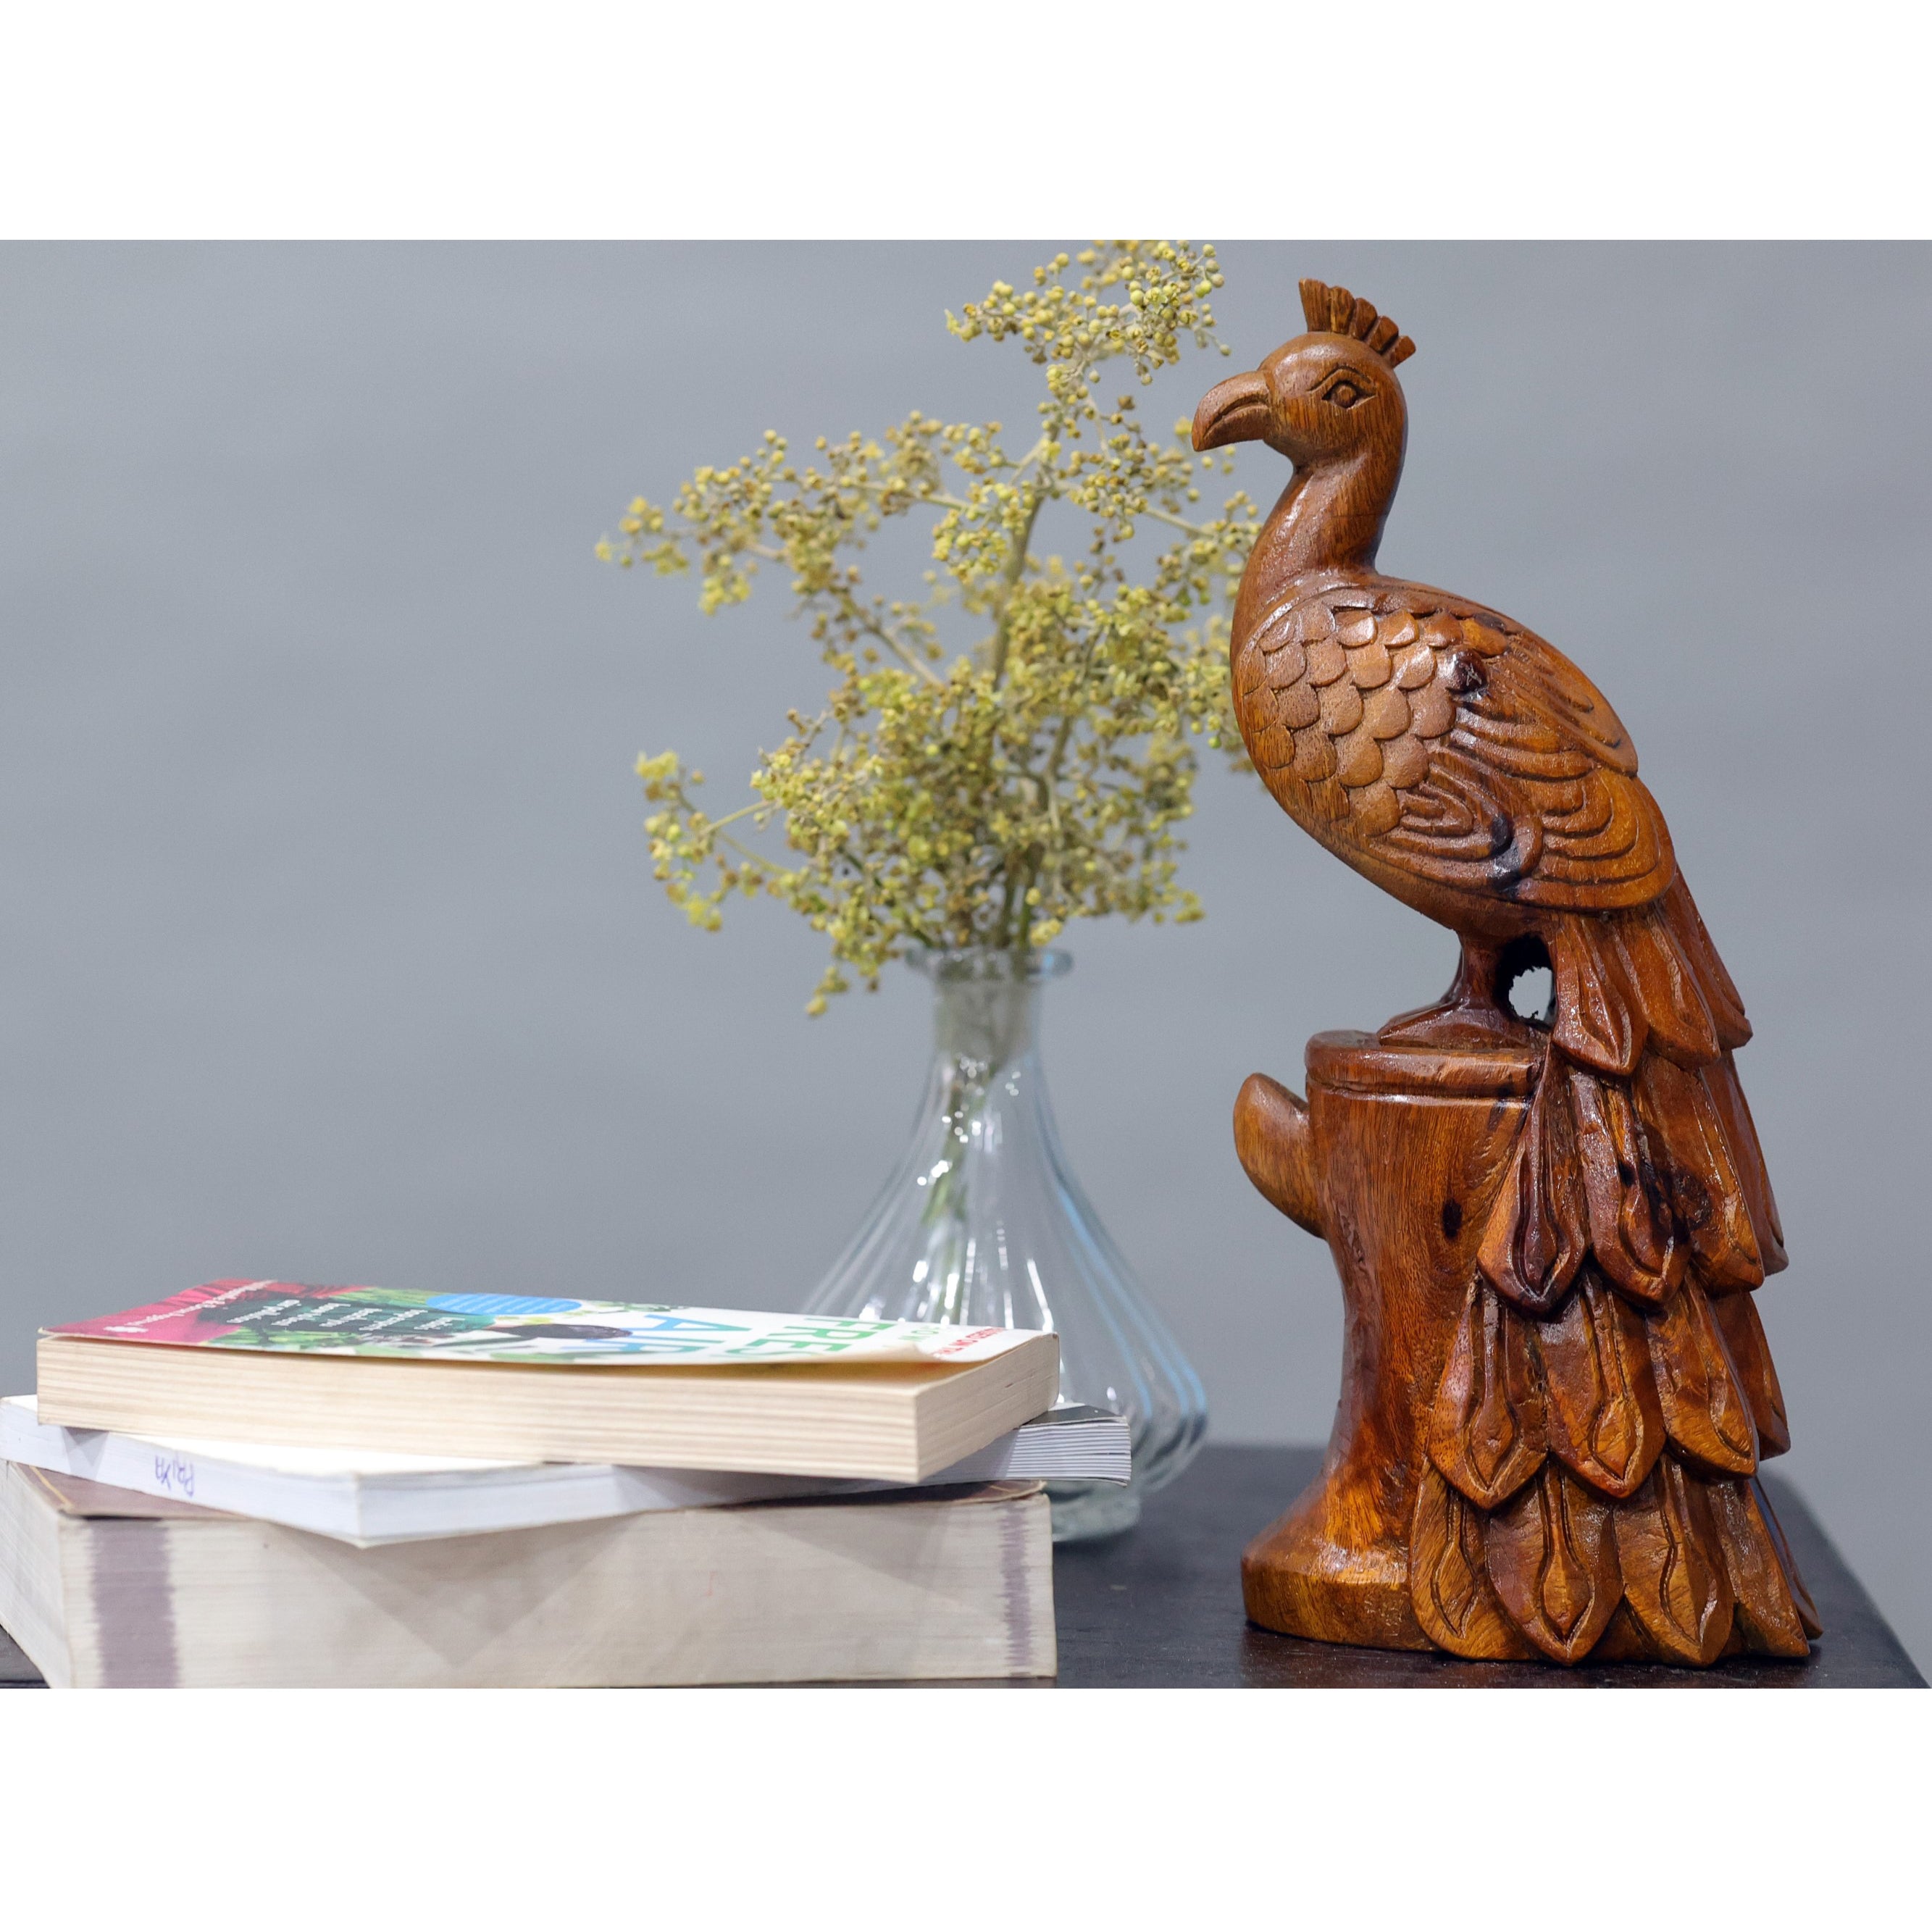 Wooden Carved Bird Animal Figurine